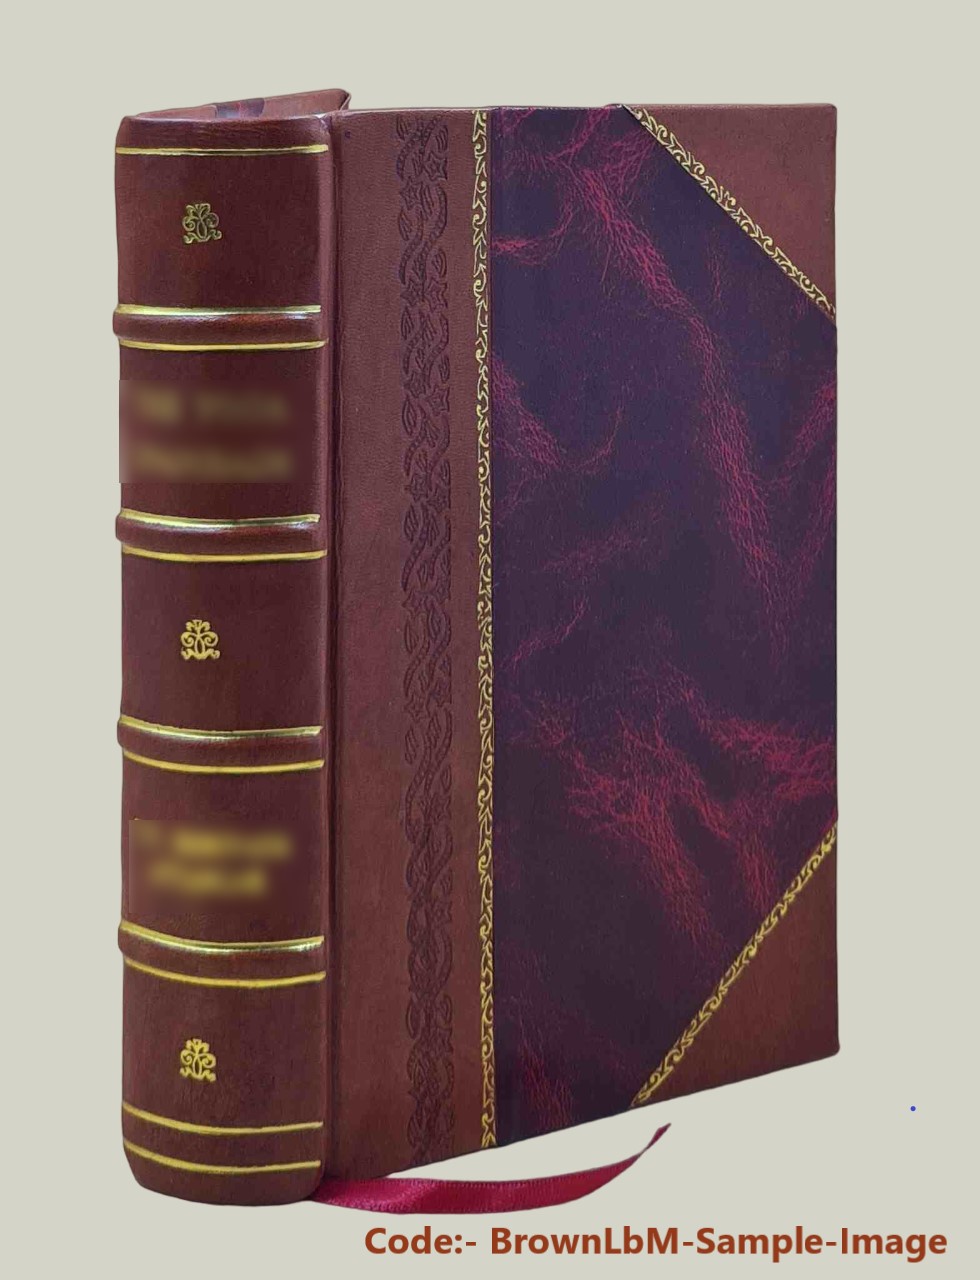 Dictionnaire d'hippiatrique et d'e?quitation : ouvrage ou? se trouvent re?unies toutes les connaissances hippiques / par F. Cardini. v.1. 1848[Leather Bound] - Cardini F. Joseph -